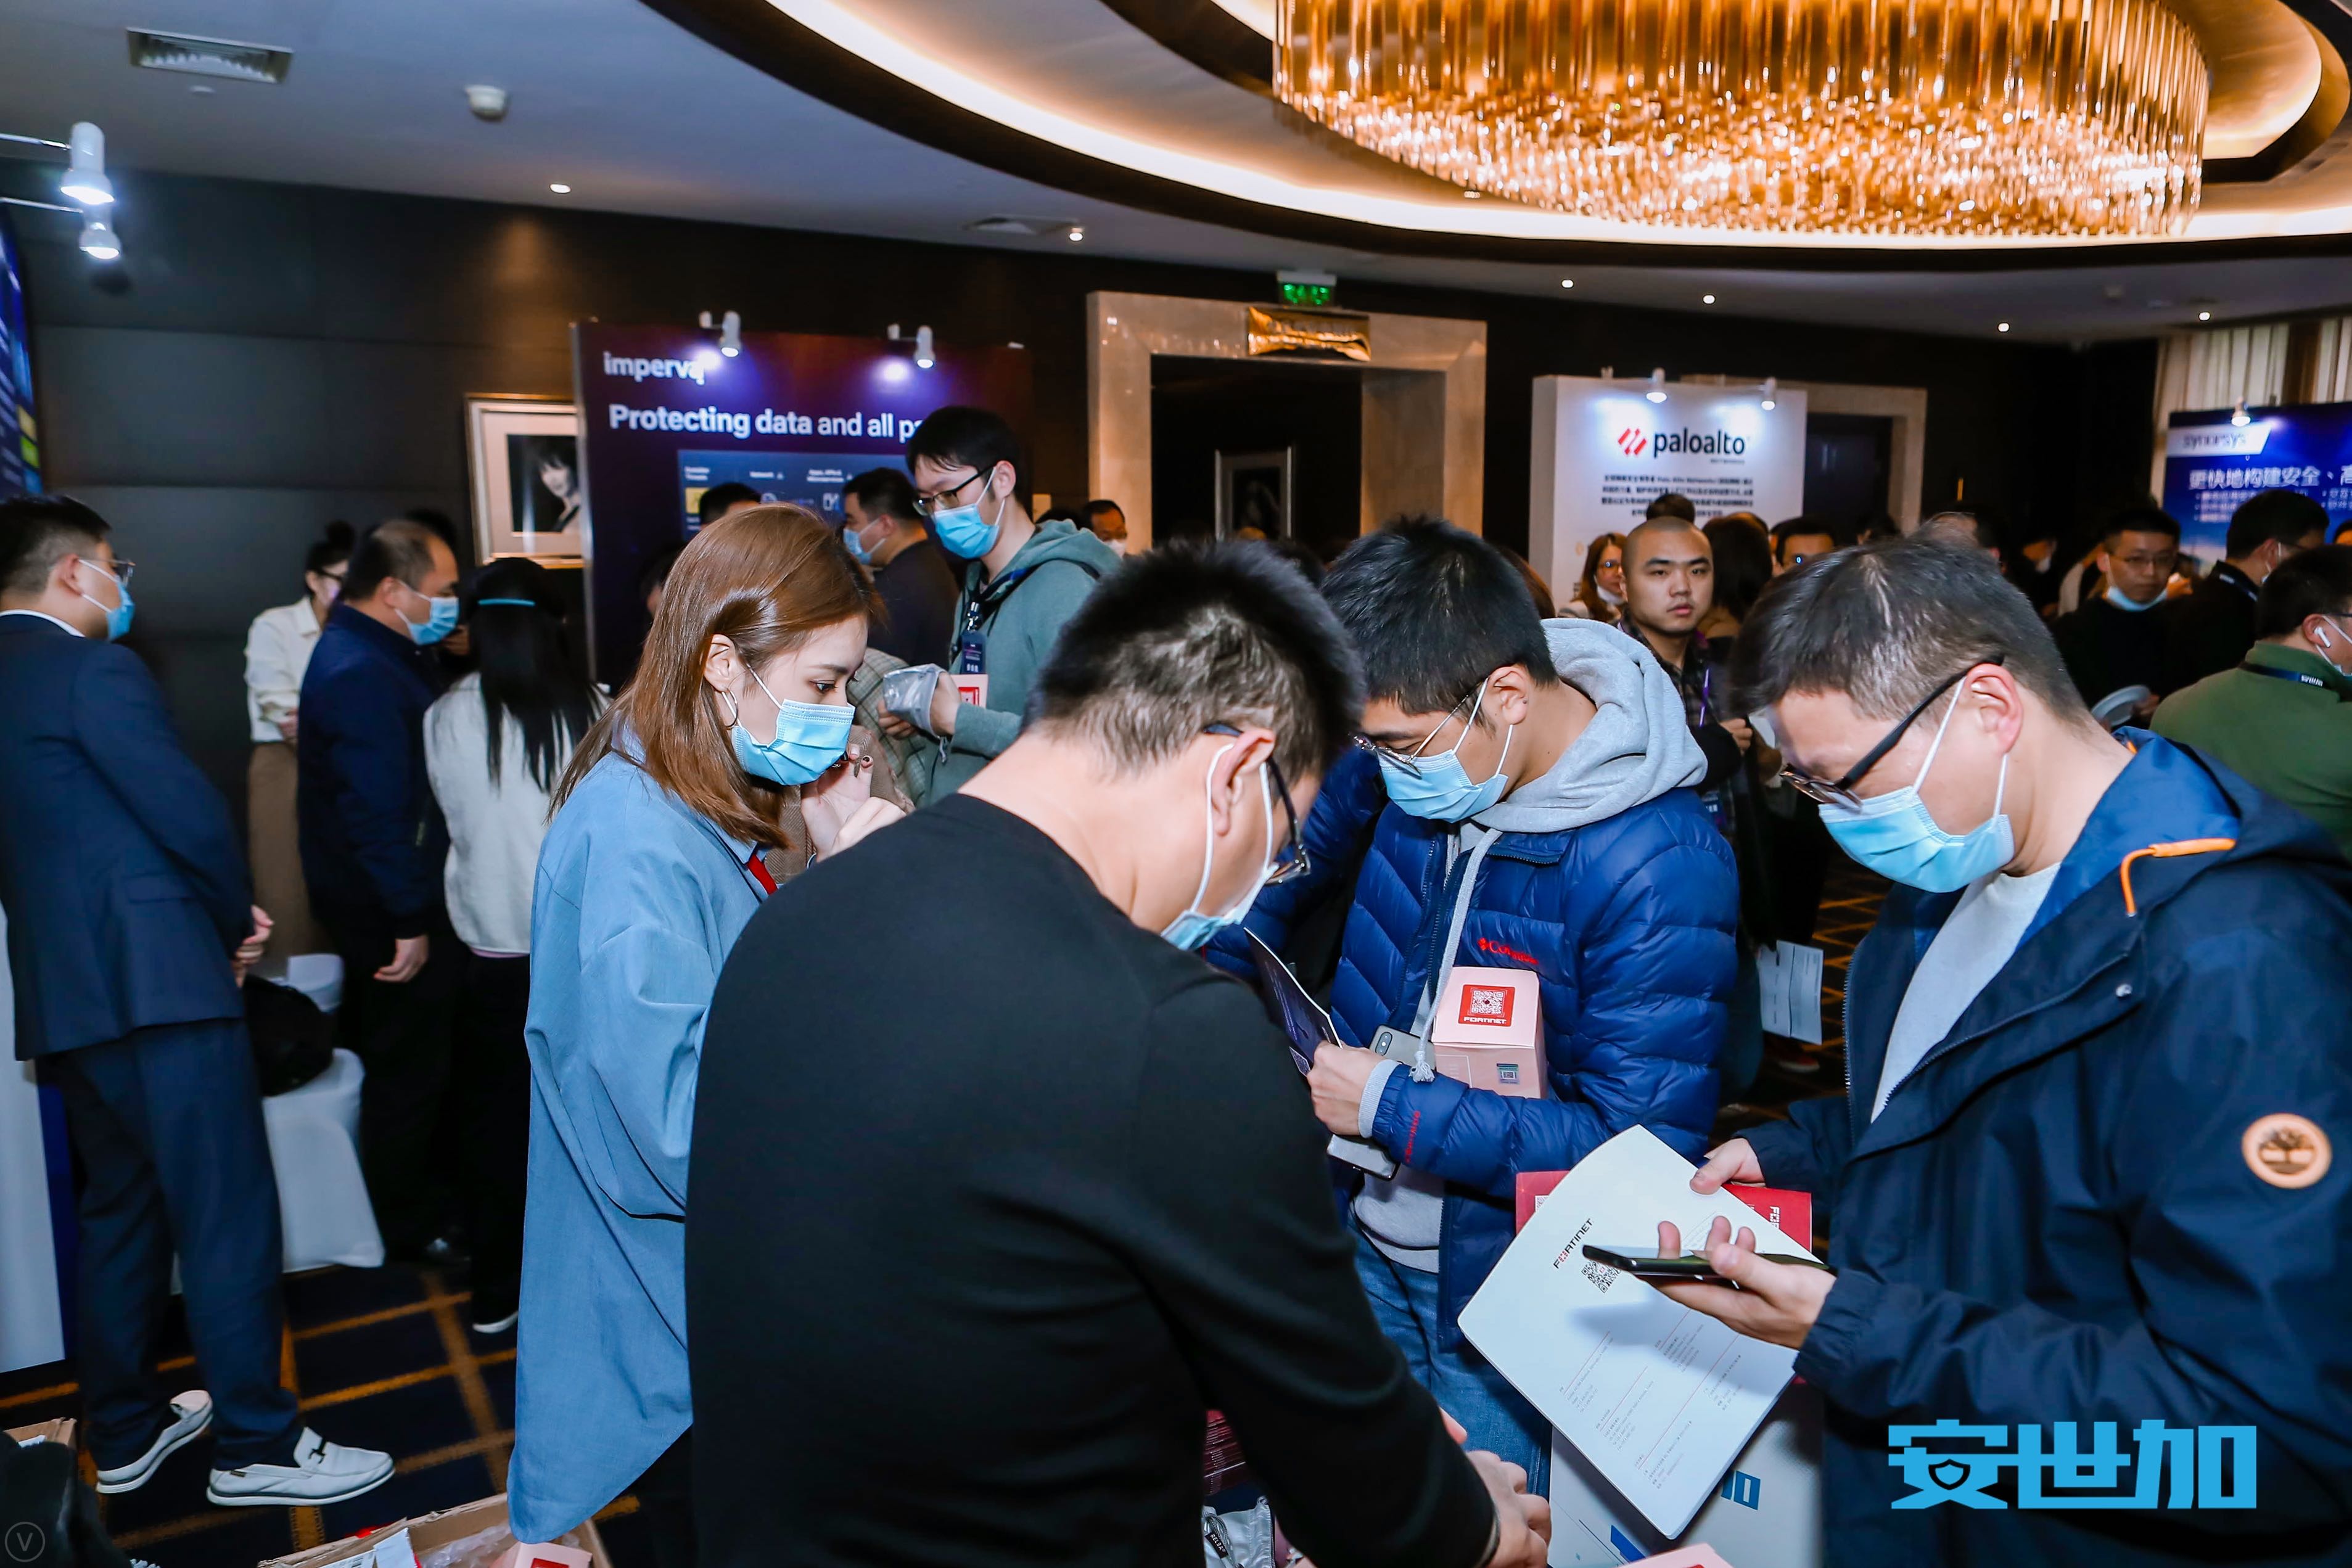 完美落幕 | EISS-2020企业信息安全峰会之上海站 11月27日成功举办-RadeBit瑞安全